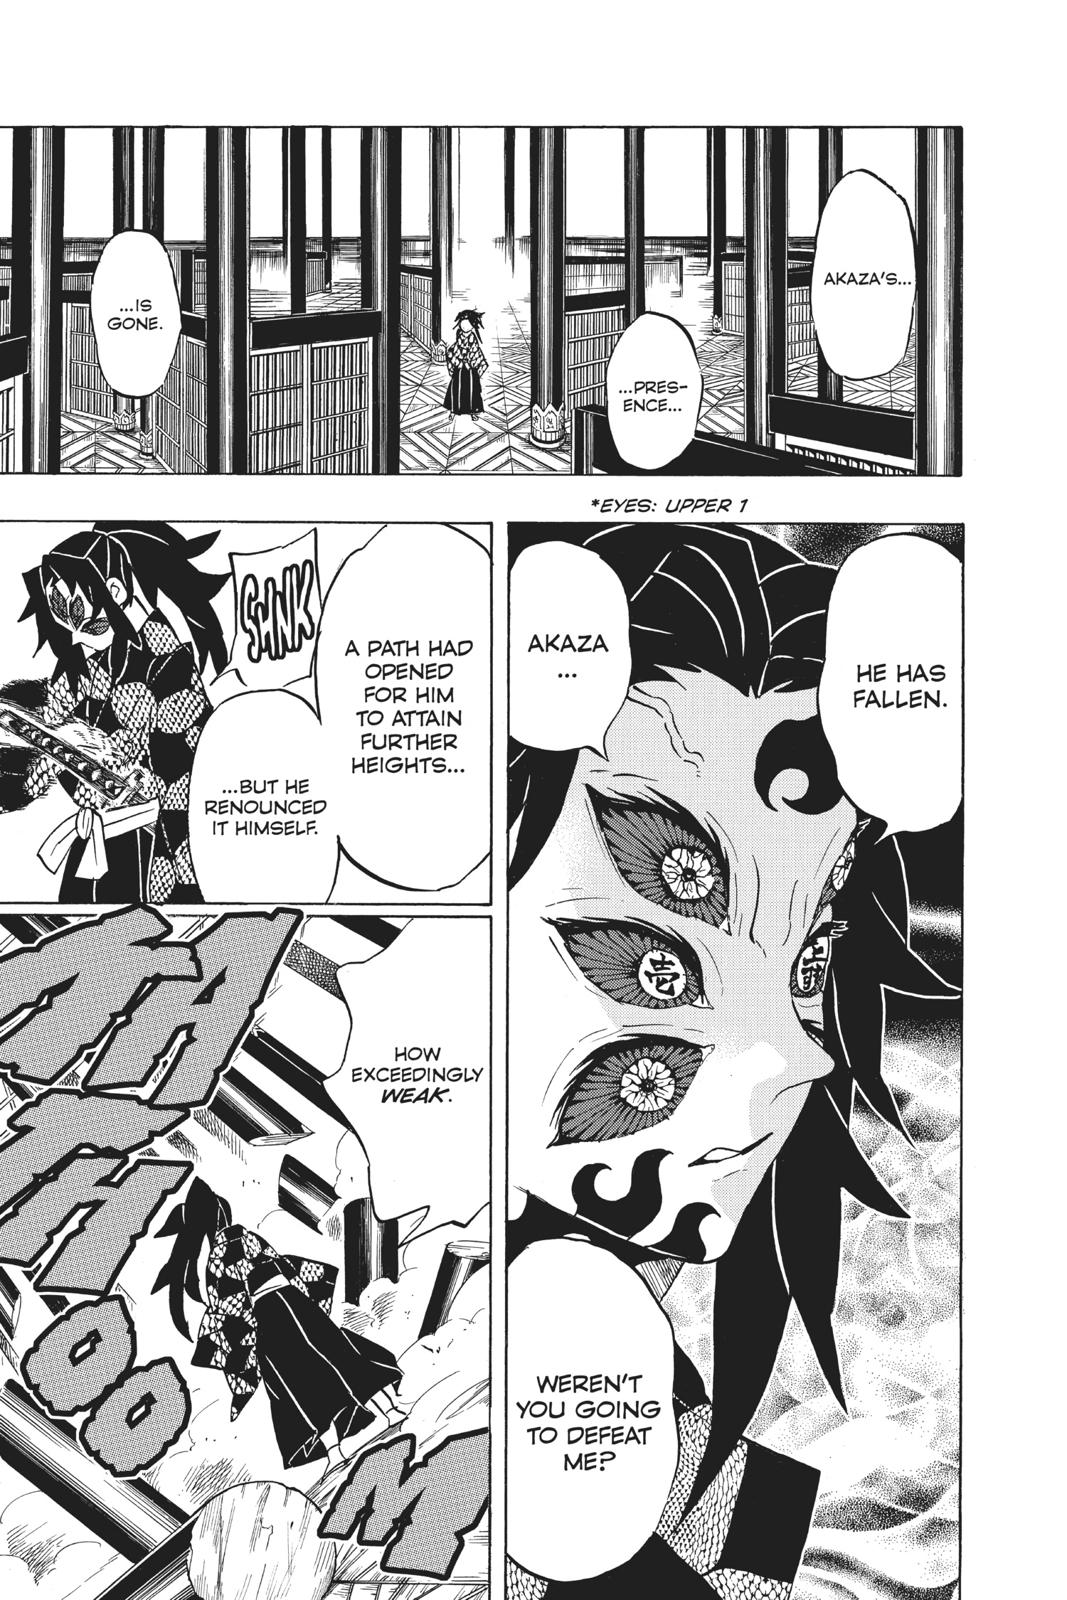 Demon Slayer Manga Manga Chapter - 157 - image 5